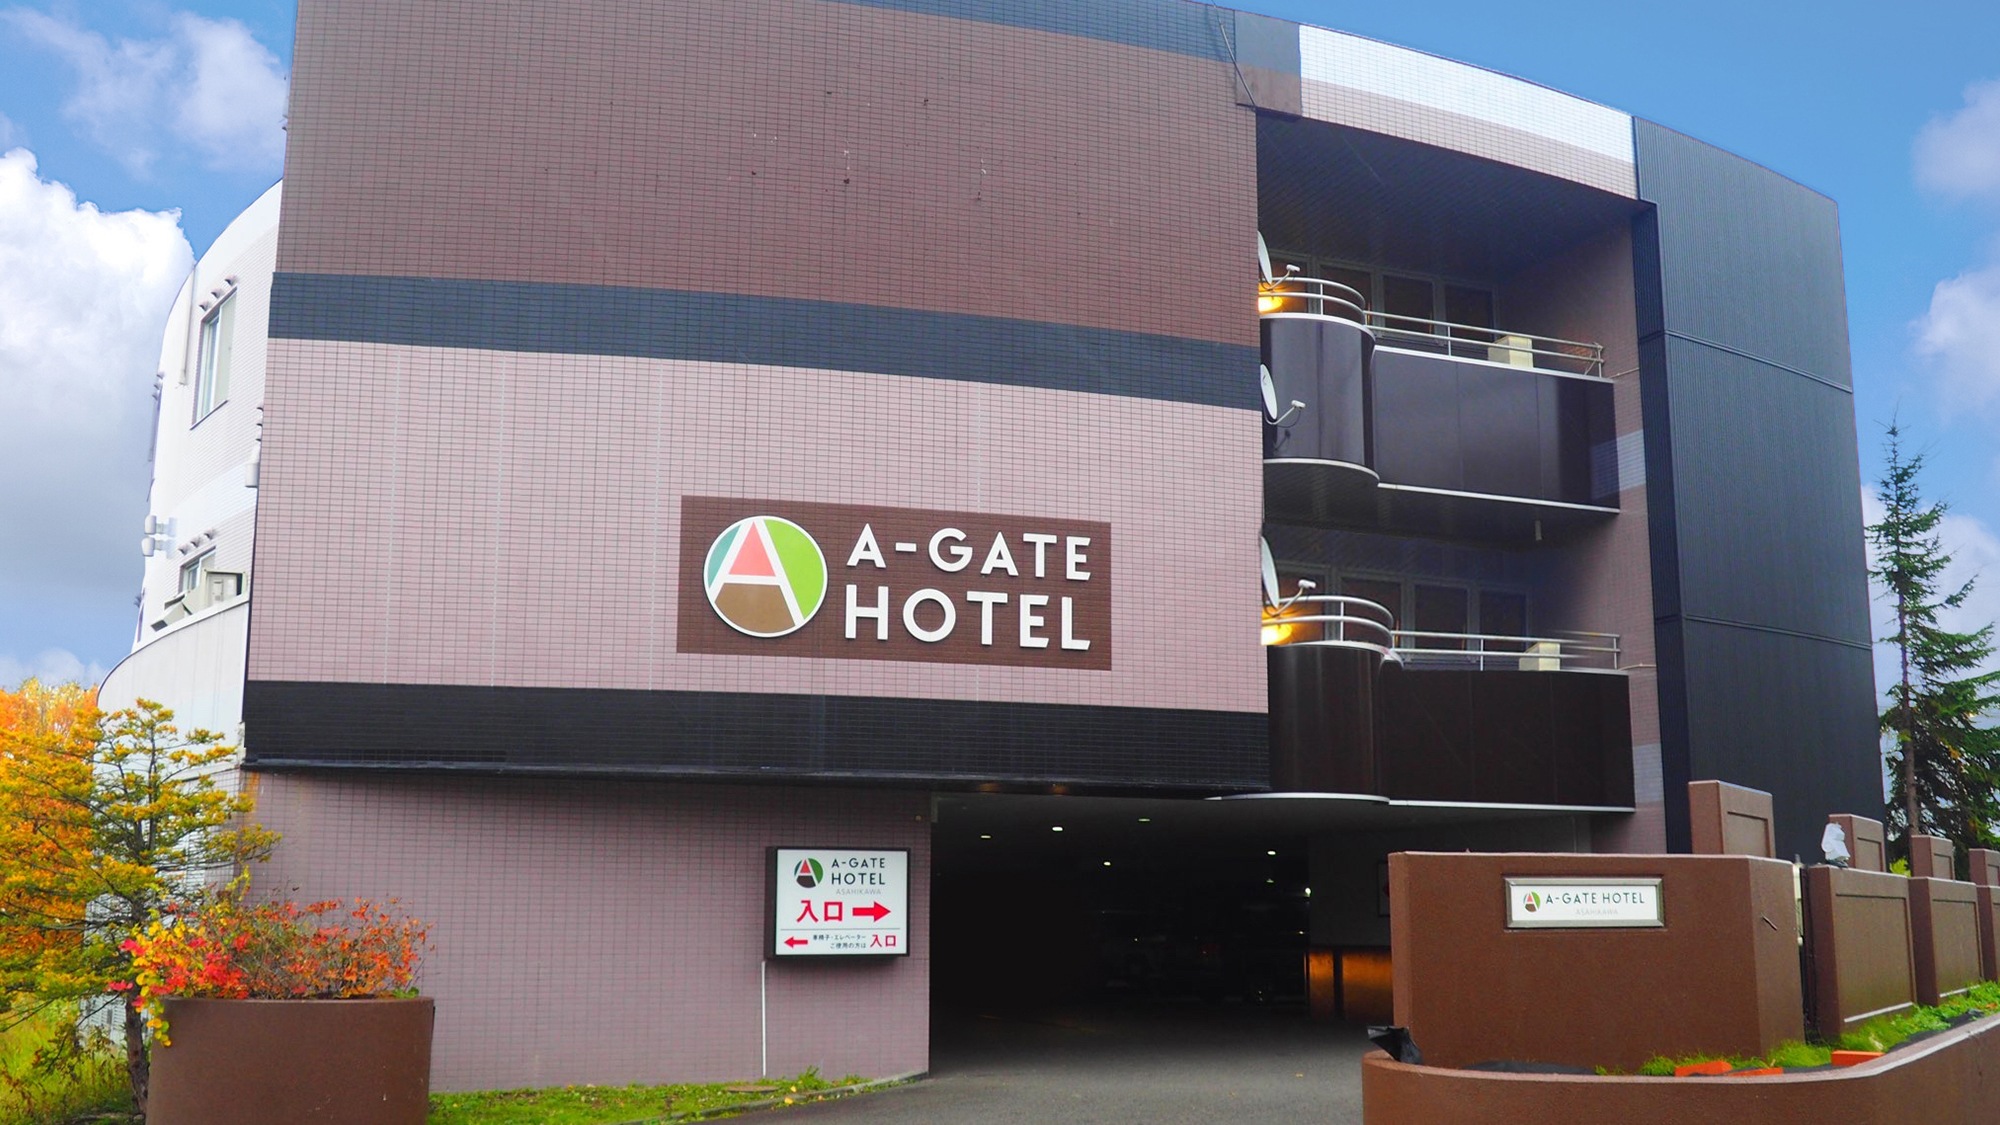 A-GATE HOTEL